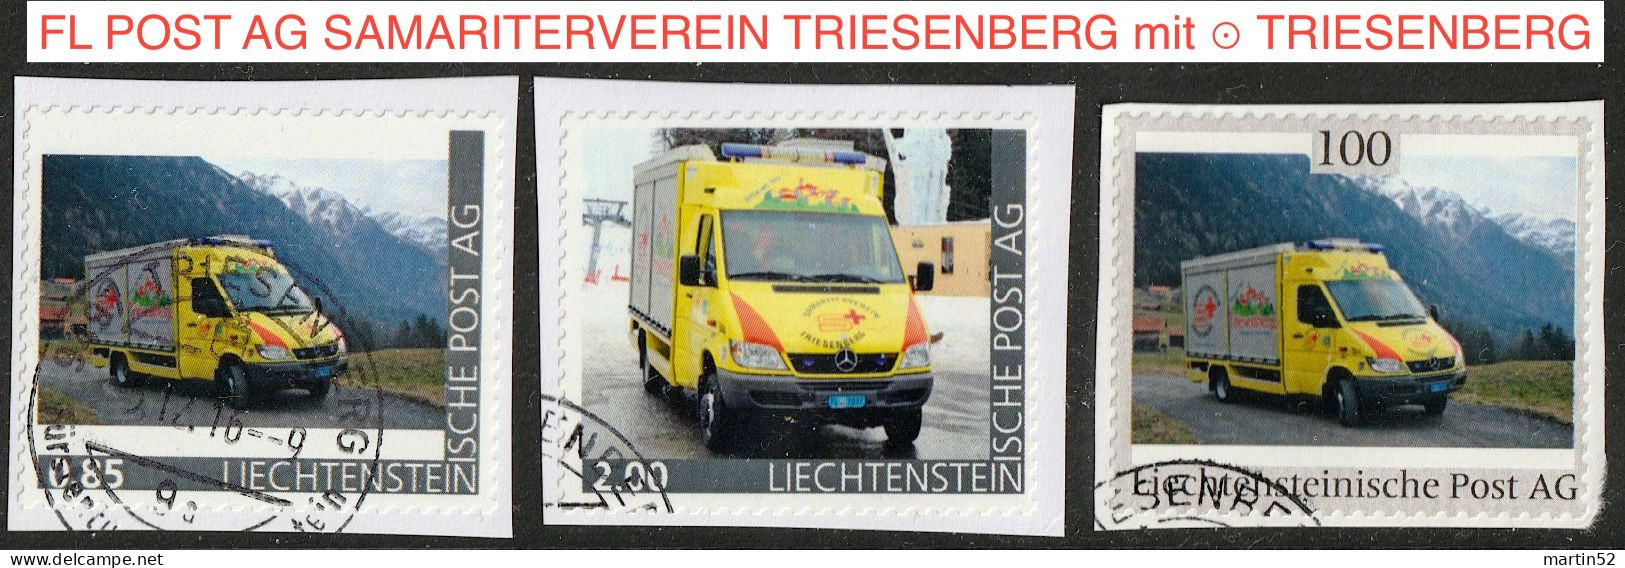 Liechtenstein 2016: Ausgabe Der FL POST AG "SAMARITERVEREIN TRIESENBERG" (Rettungs-Bus) Mit ⊙ Von TRIESENBERG - Plaatfouten